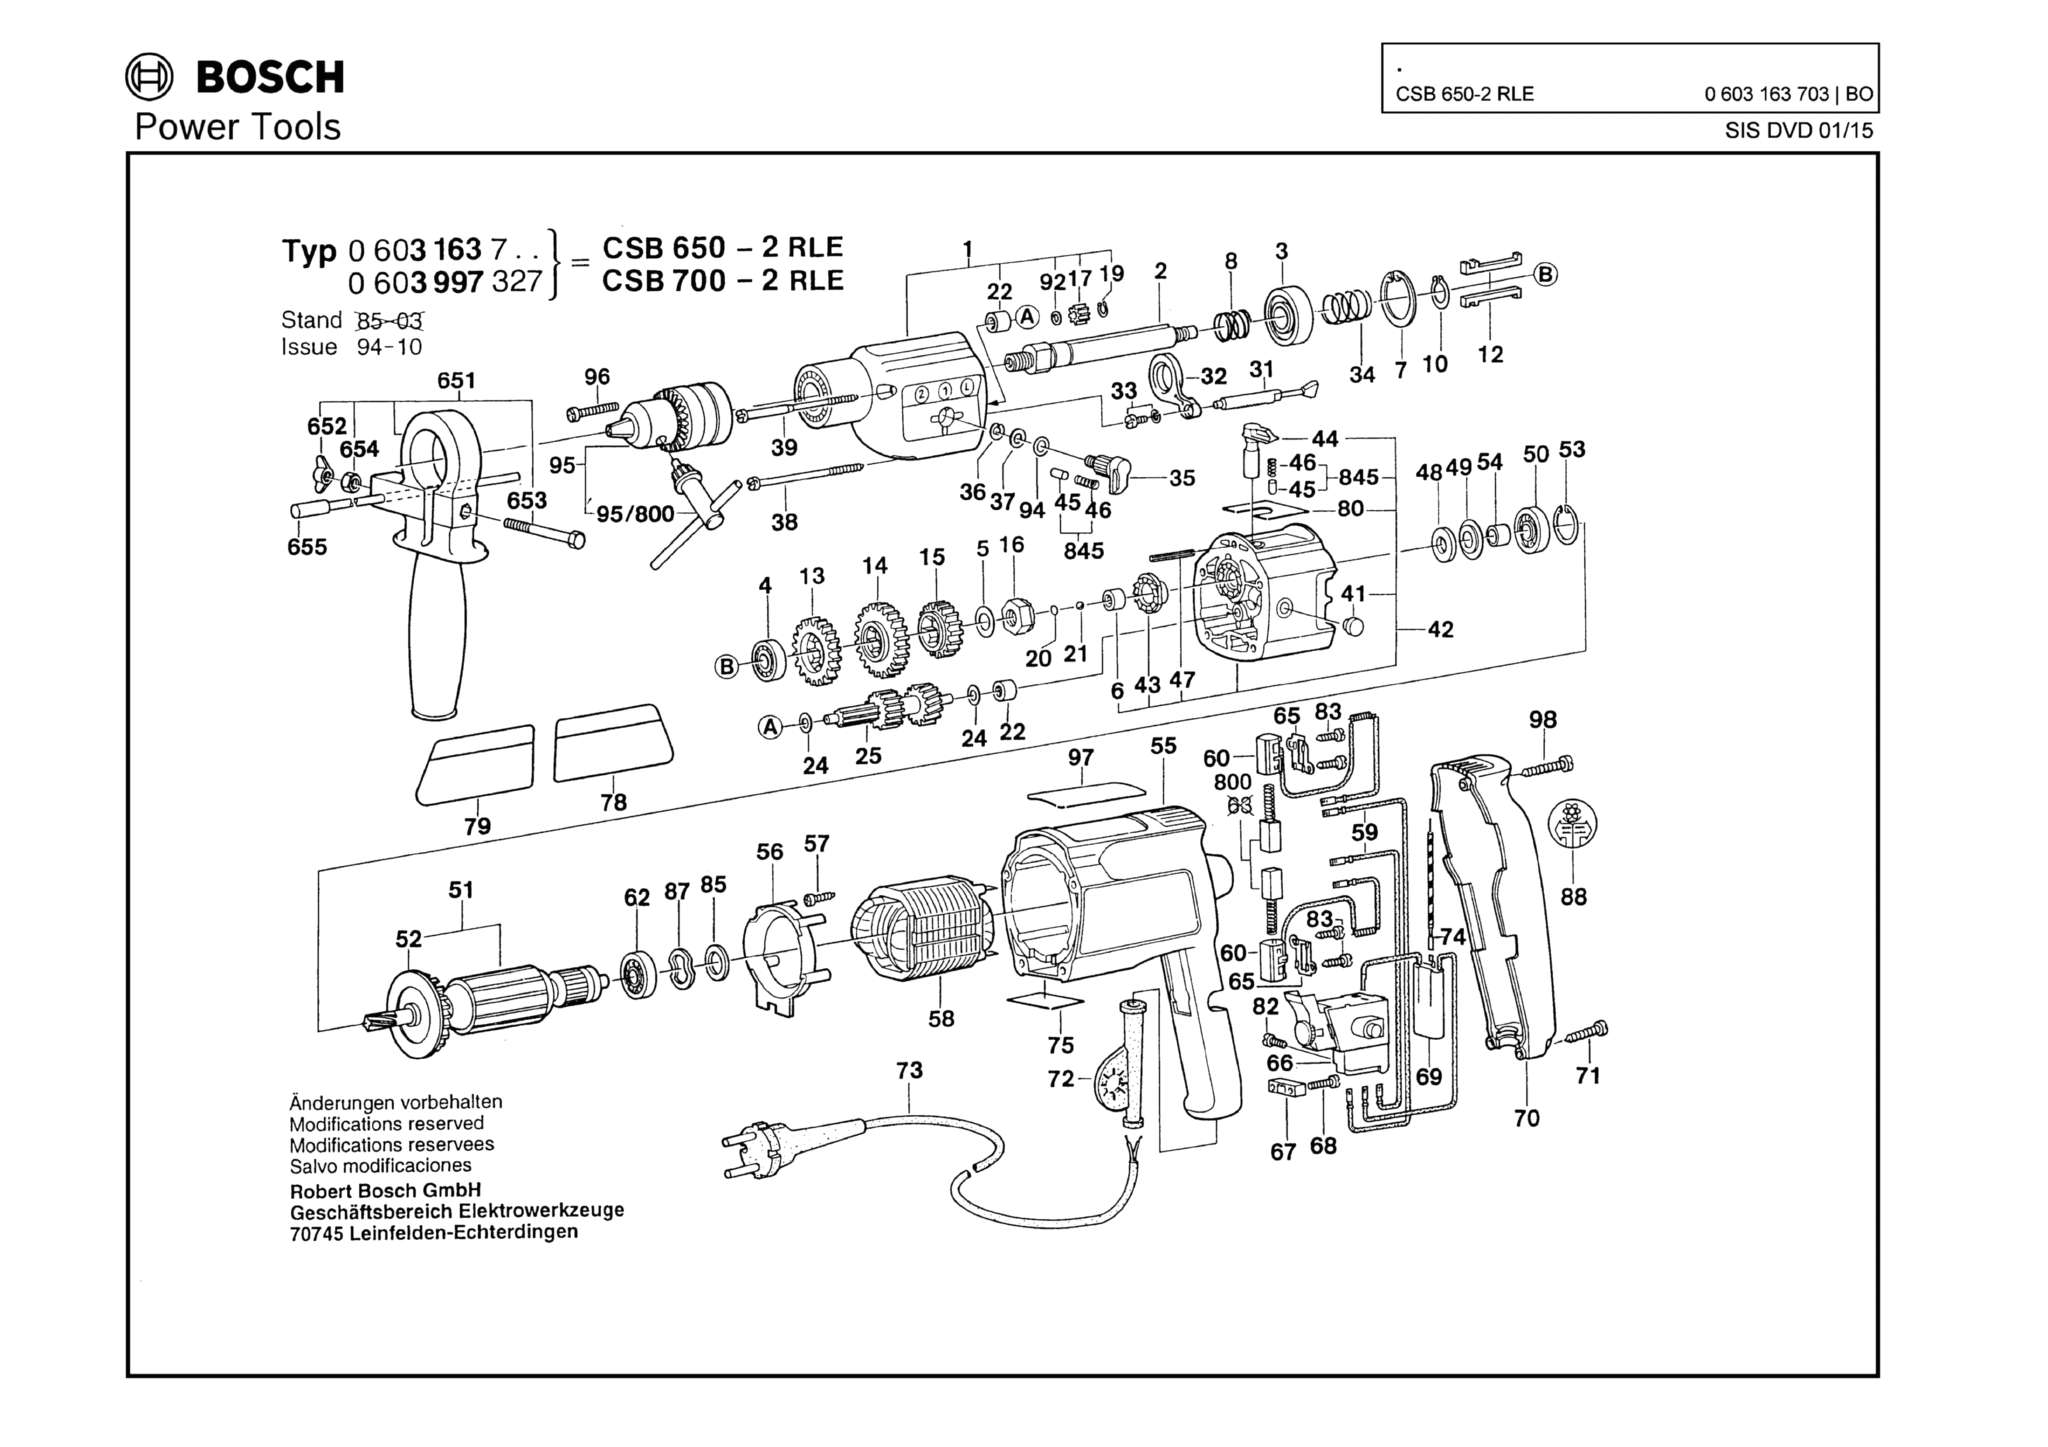 Запчасти, схема и деталировка Bosch CSB 650-2 RLE (ТИП 0603163703)